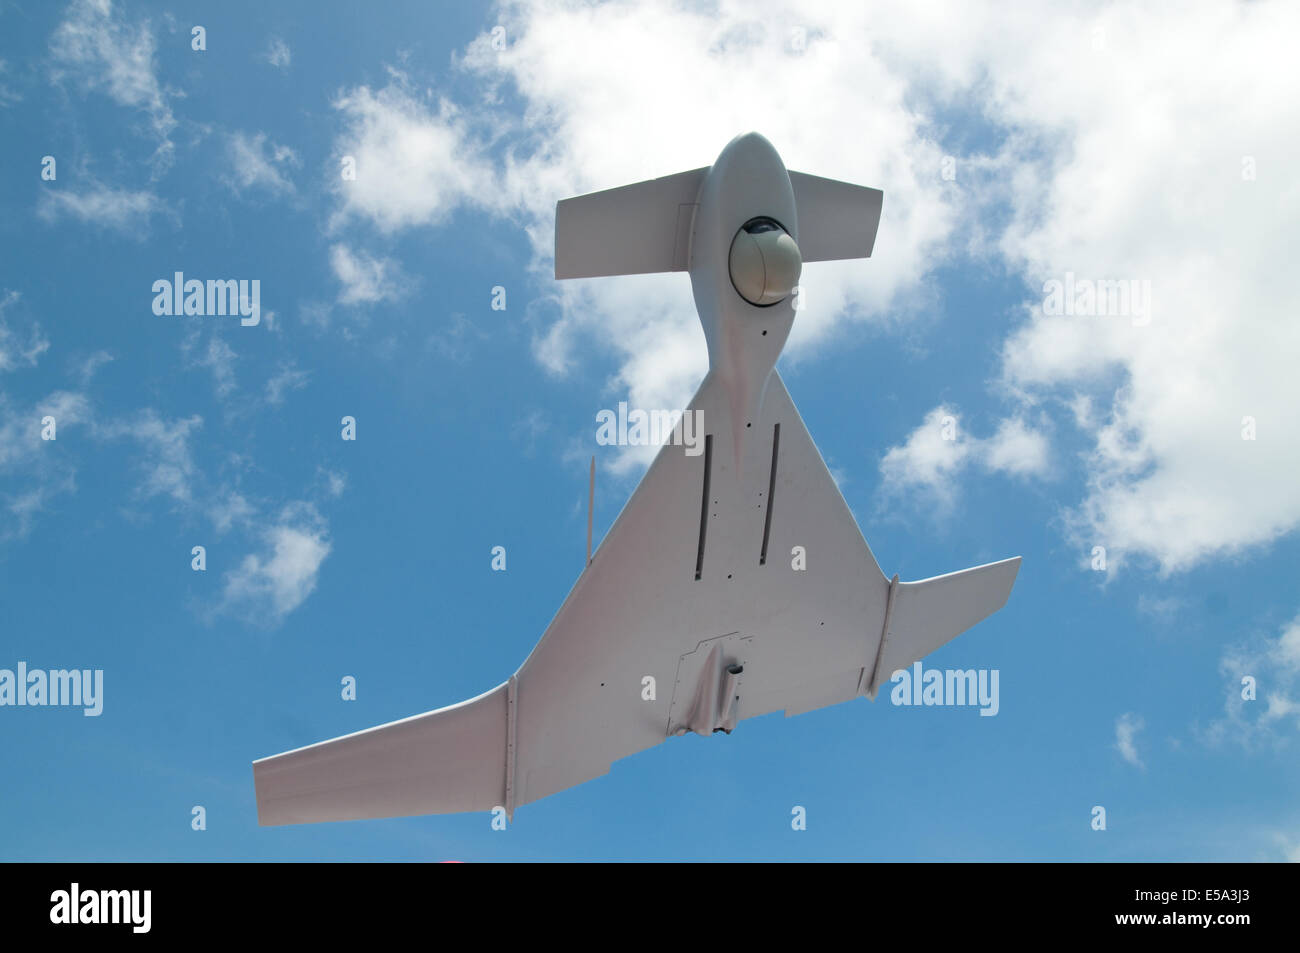 Vehículo aéreo no tripulado, UAV o zumbido, con la cámara en la nariz para misiones de vigilancia. Foto de stock